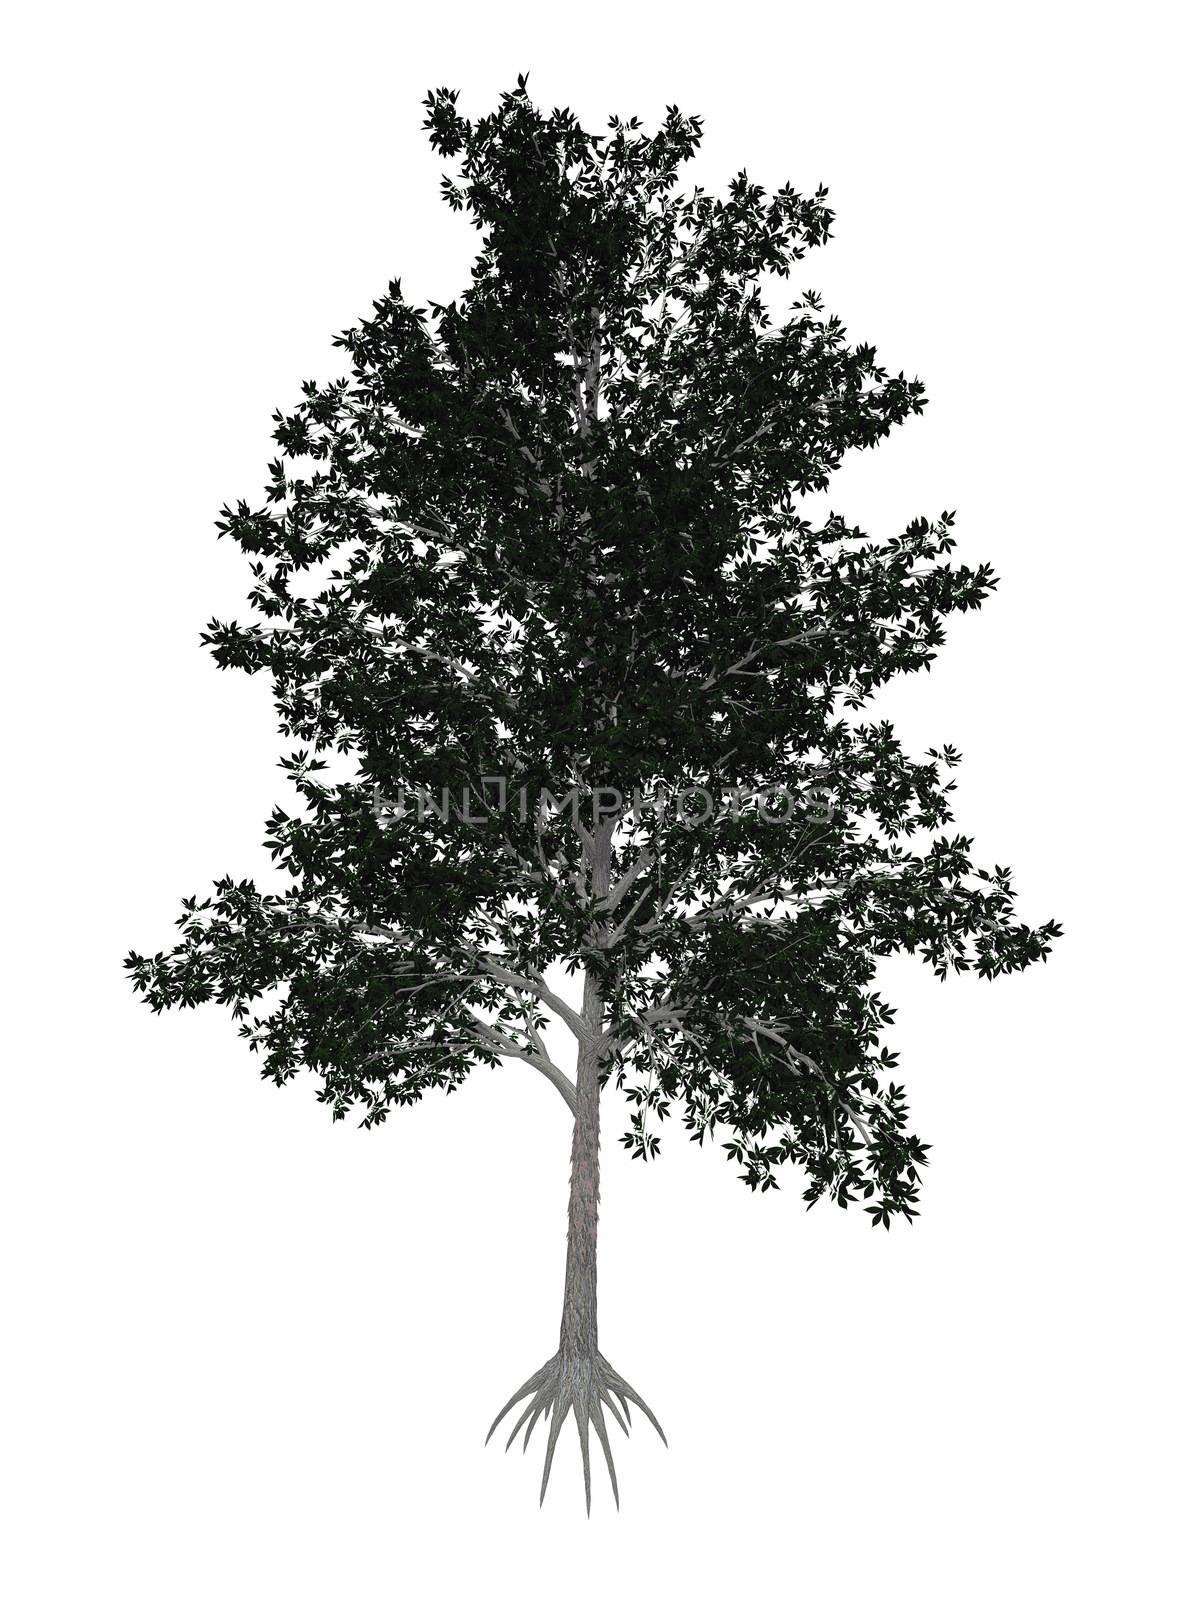 Shagbark hickory, Carya ovata tree - 3D render by Elenaphotos21